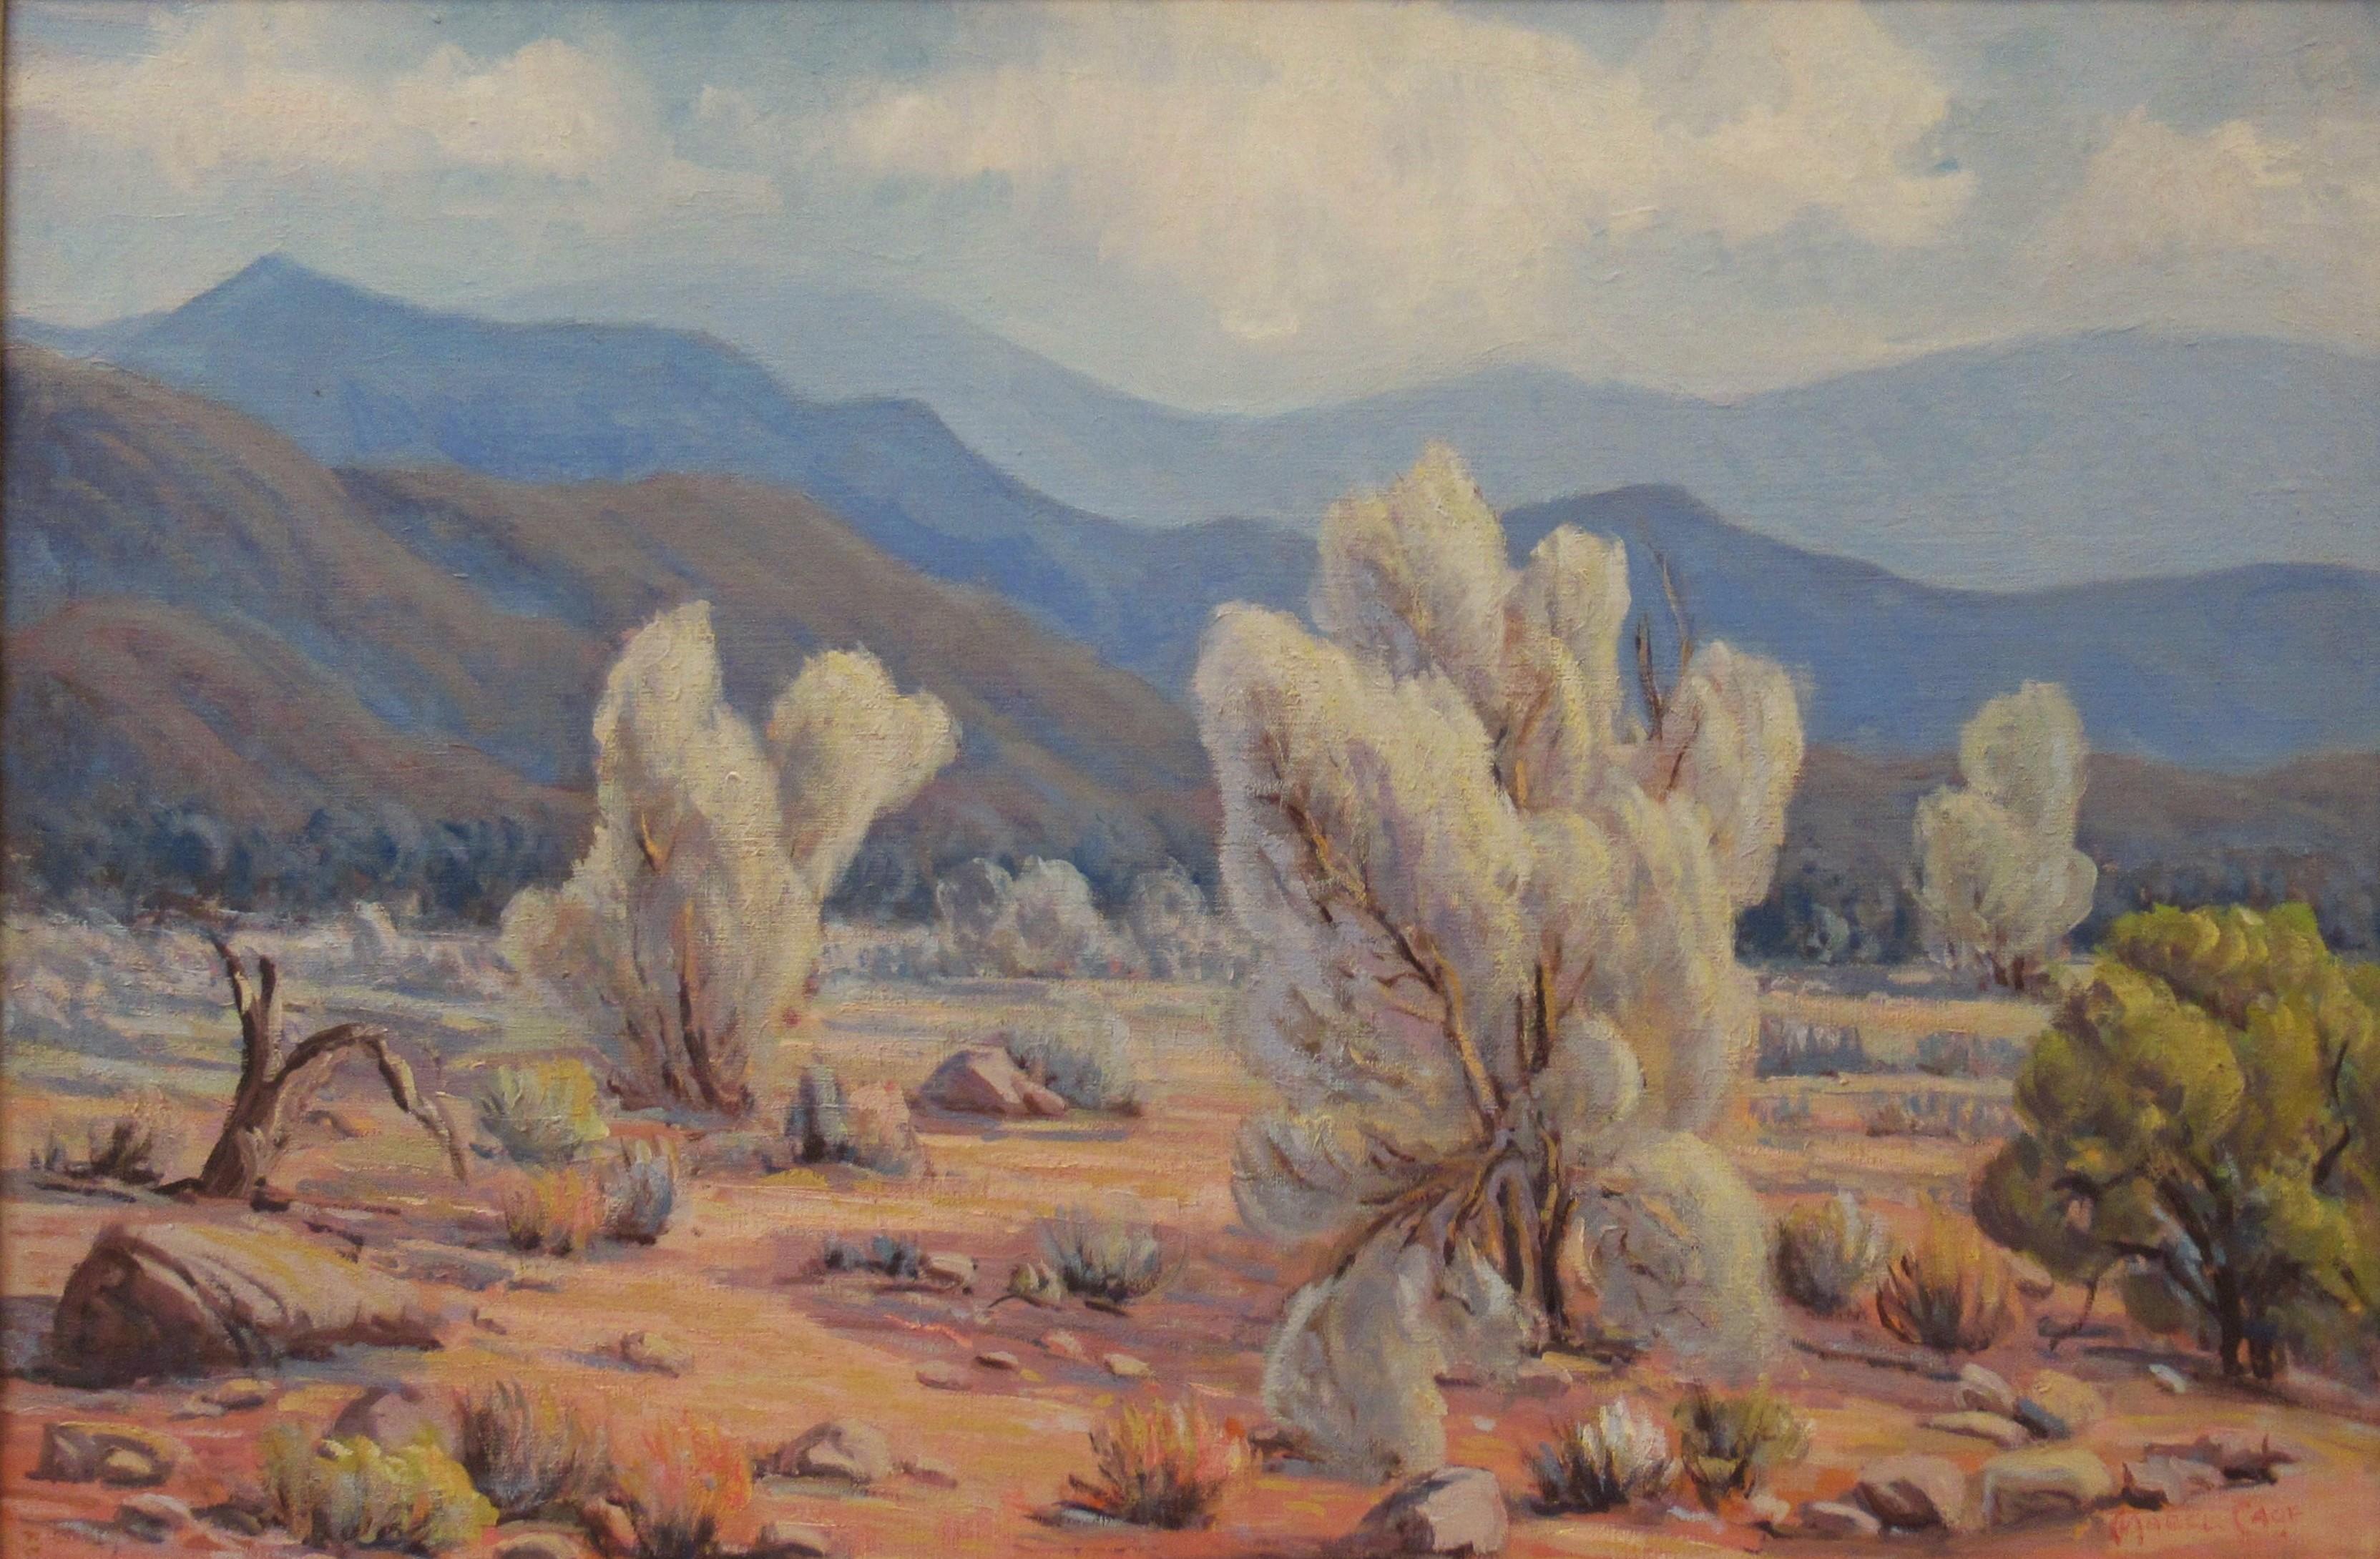 Auf dem Weg nach Palm Spring – Painting von Mabel Vinson Cage